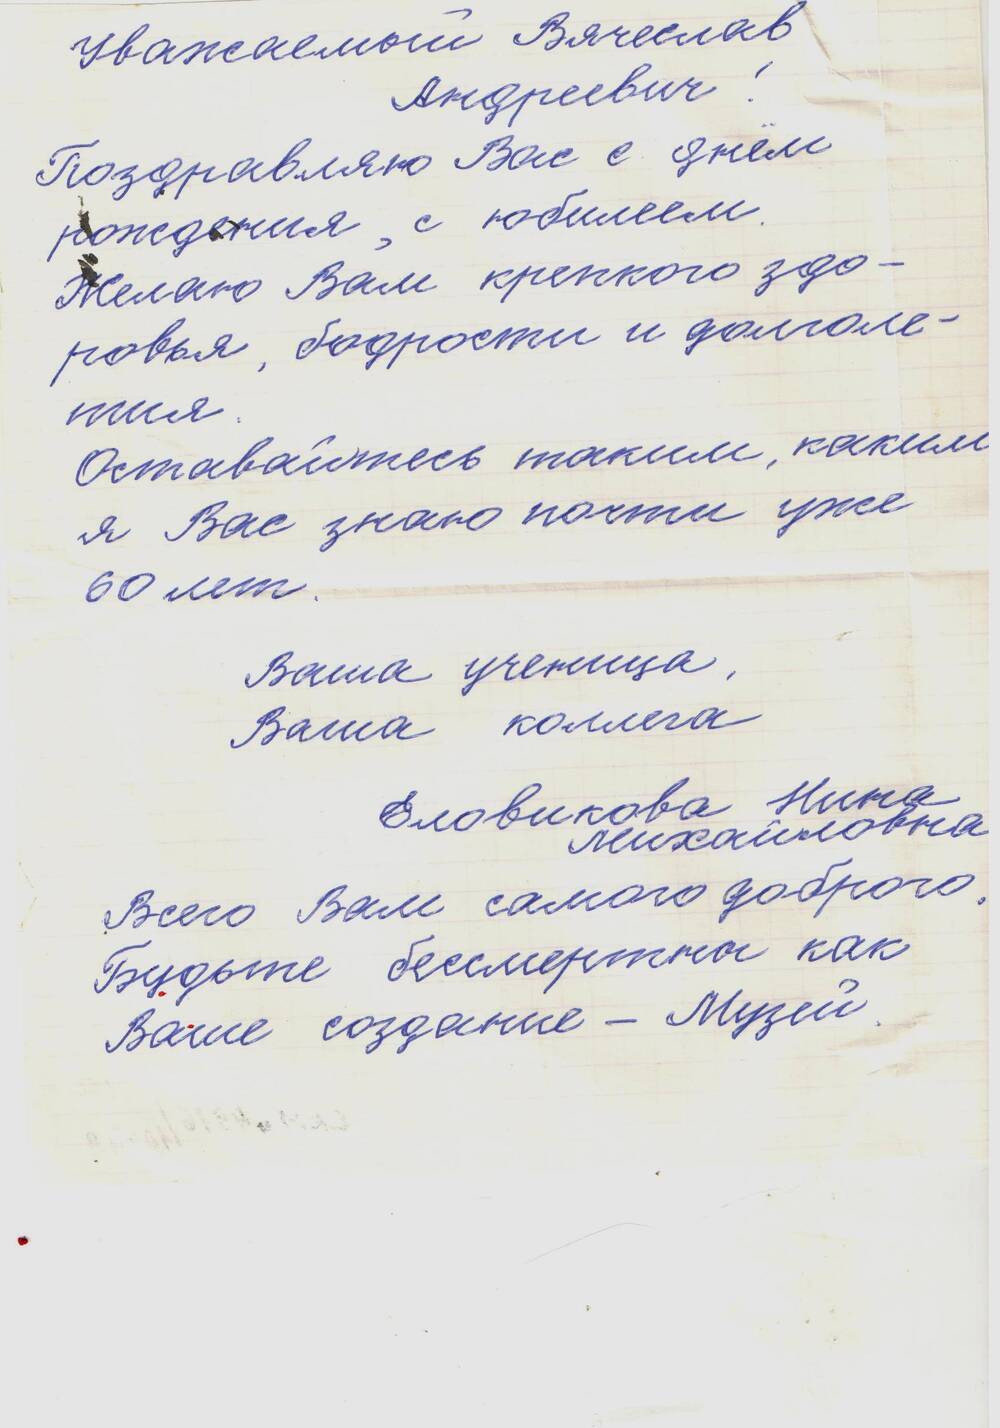 Письмо поздравительное Громова В.А. от Еловиковой Н.М.  в день рождения. 1999 г